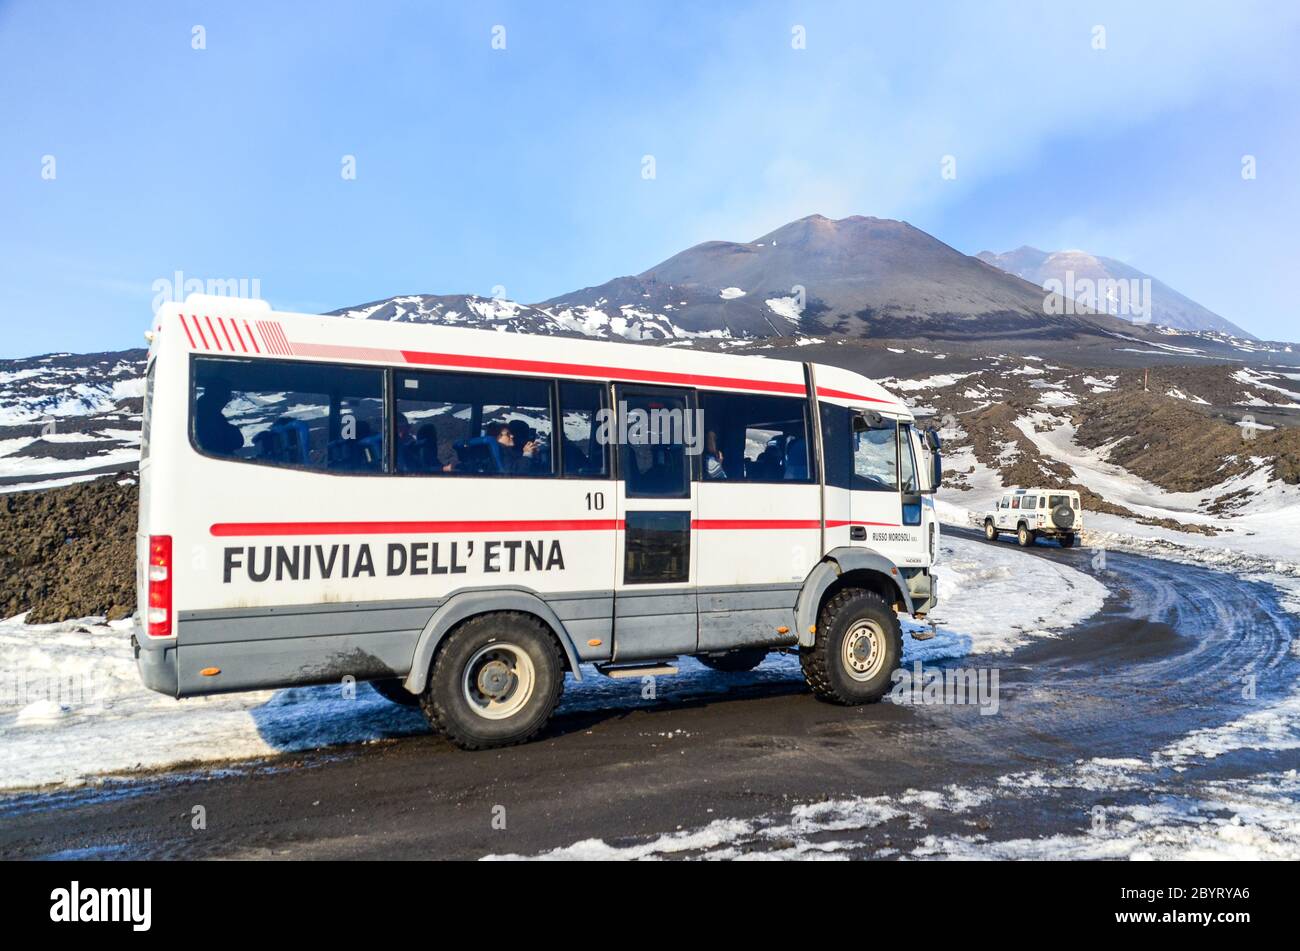 Vacaciones aventureras con el vehículo turístico 'Funivia ell'Etna' en las cenizas por encima de 2000m en la cima del Monte Etna, Sicilia, Italia Foto de stock